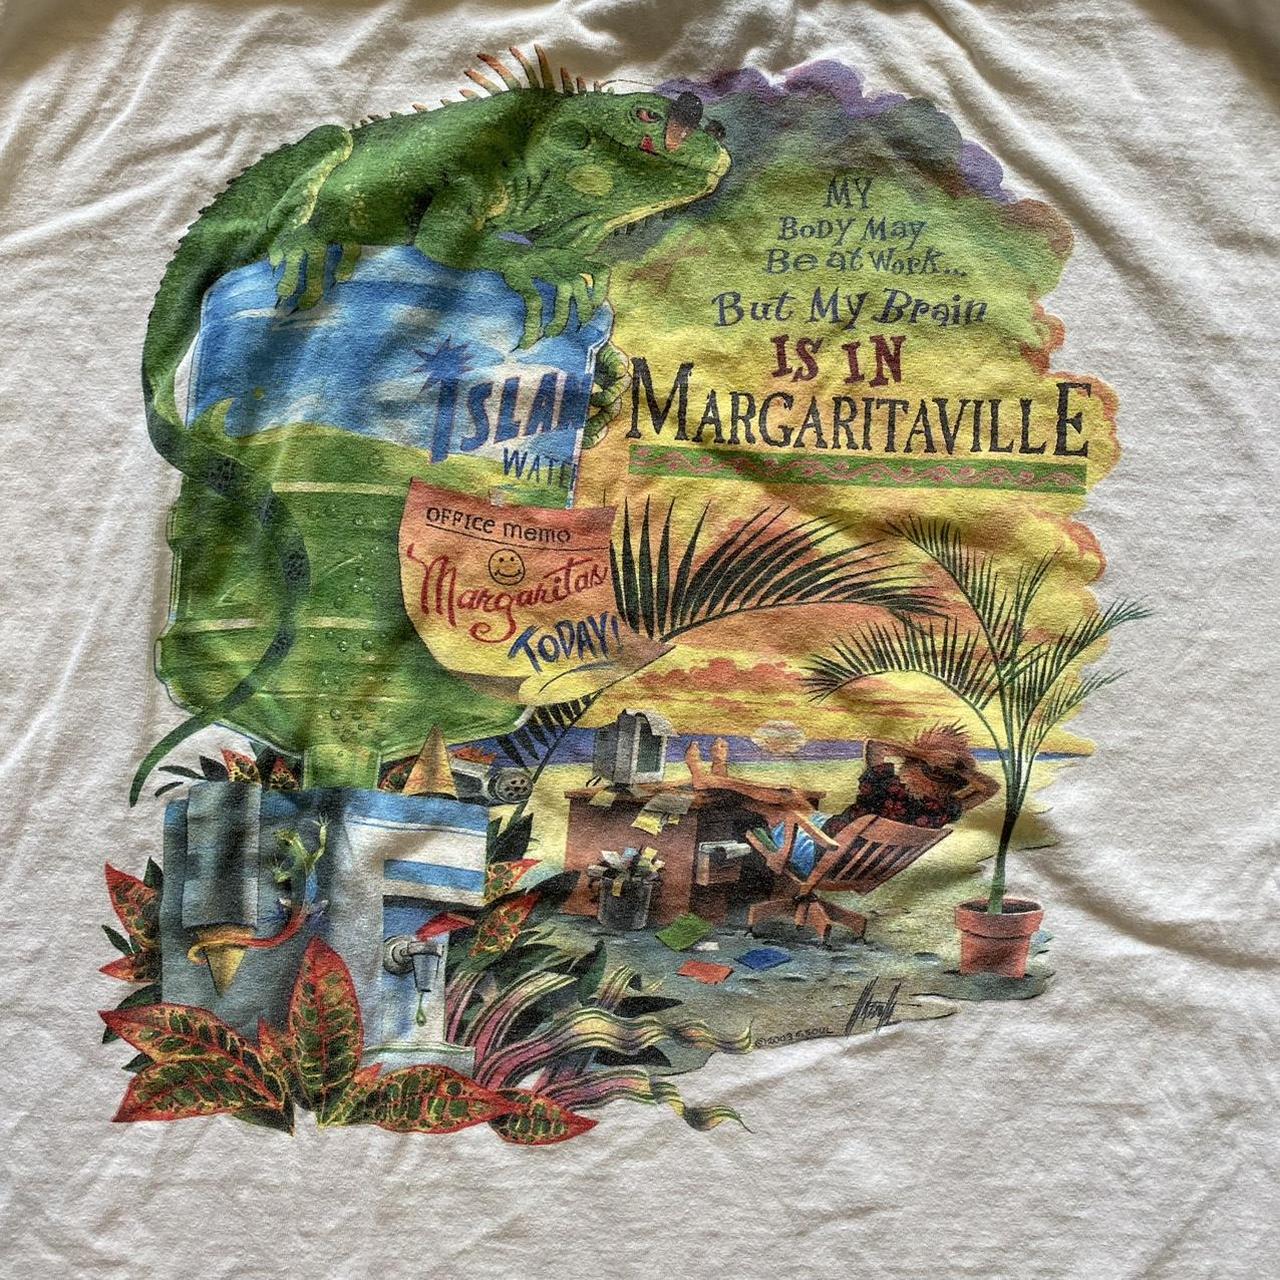 Margaritaville T-shirt 